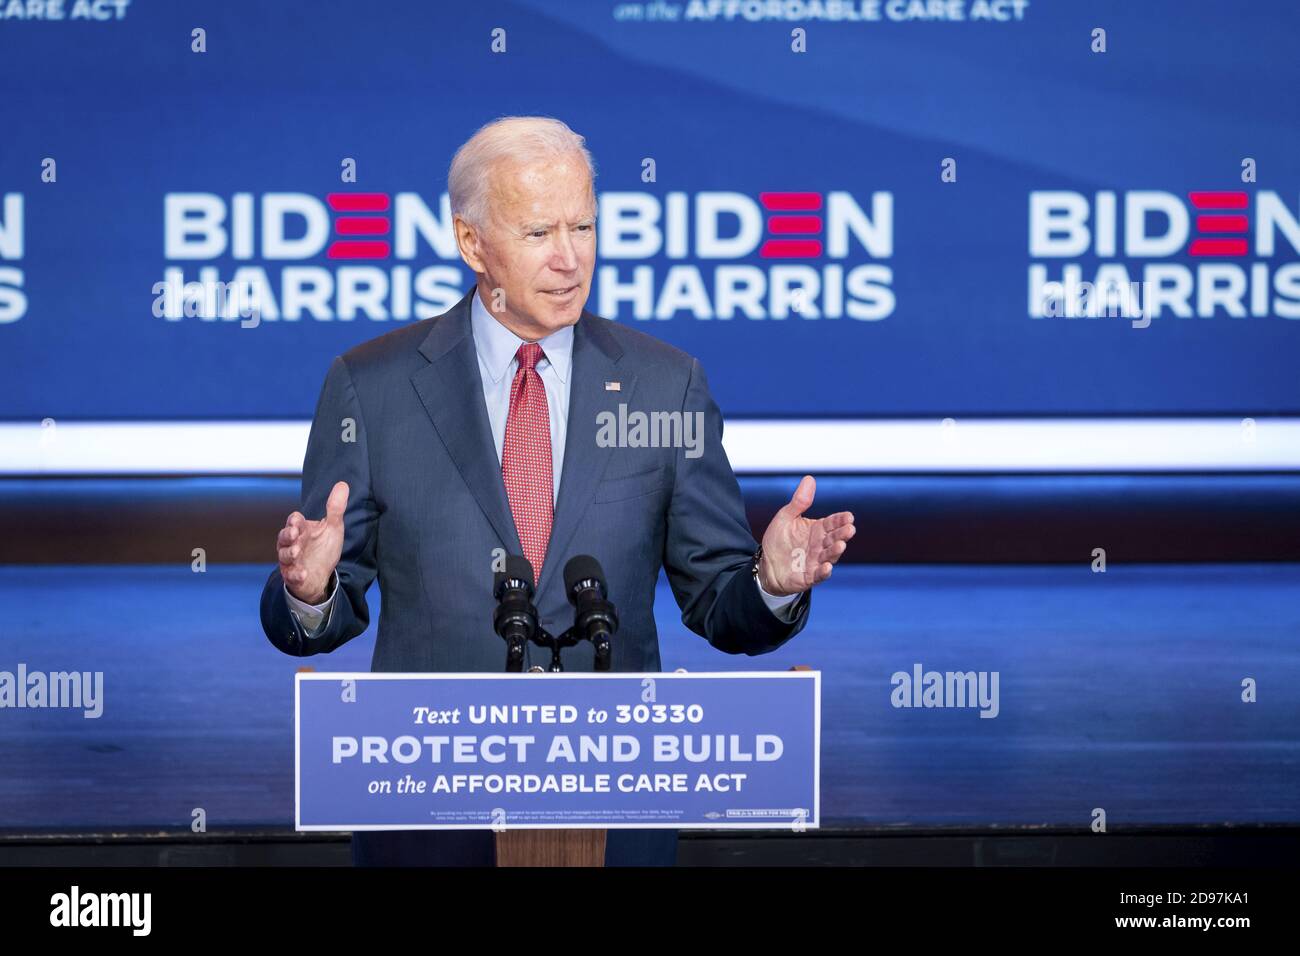 WILMINGTON, DELAWARE, États-Unis - 28 octobre 2020 - Joe Biden, candidat démocrate à la présidence des États-Unis, prononce un discours sur l'Affordable Care Act à Wilmington, Banque D'Images